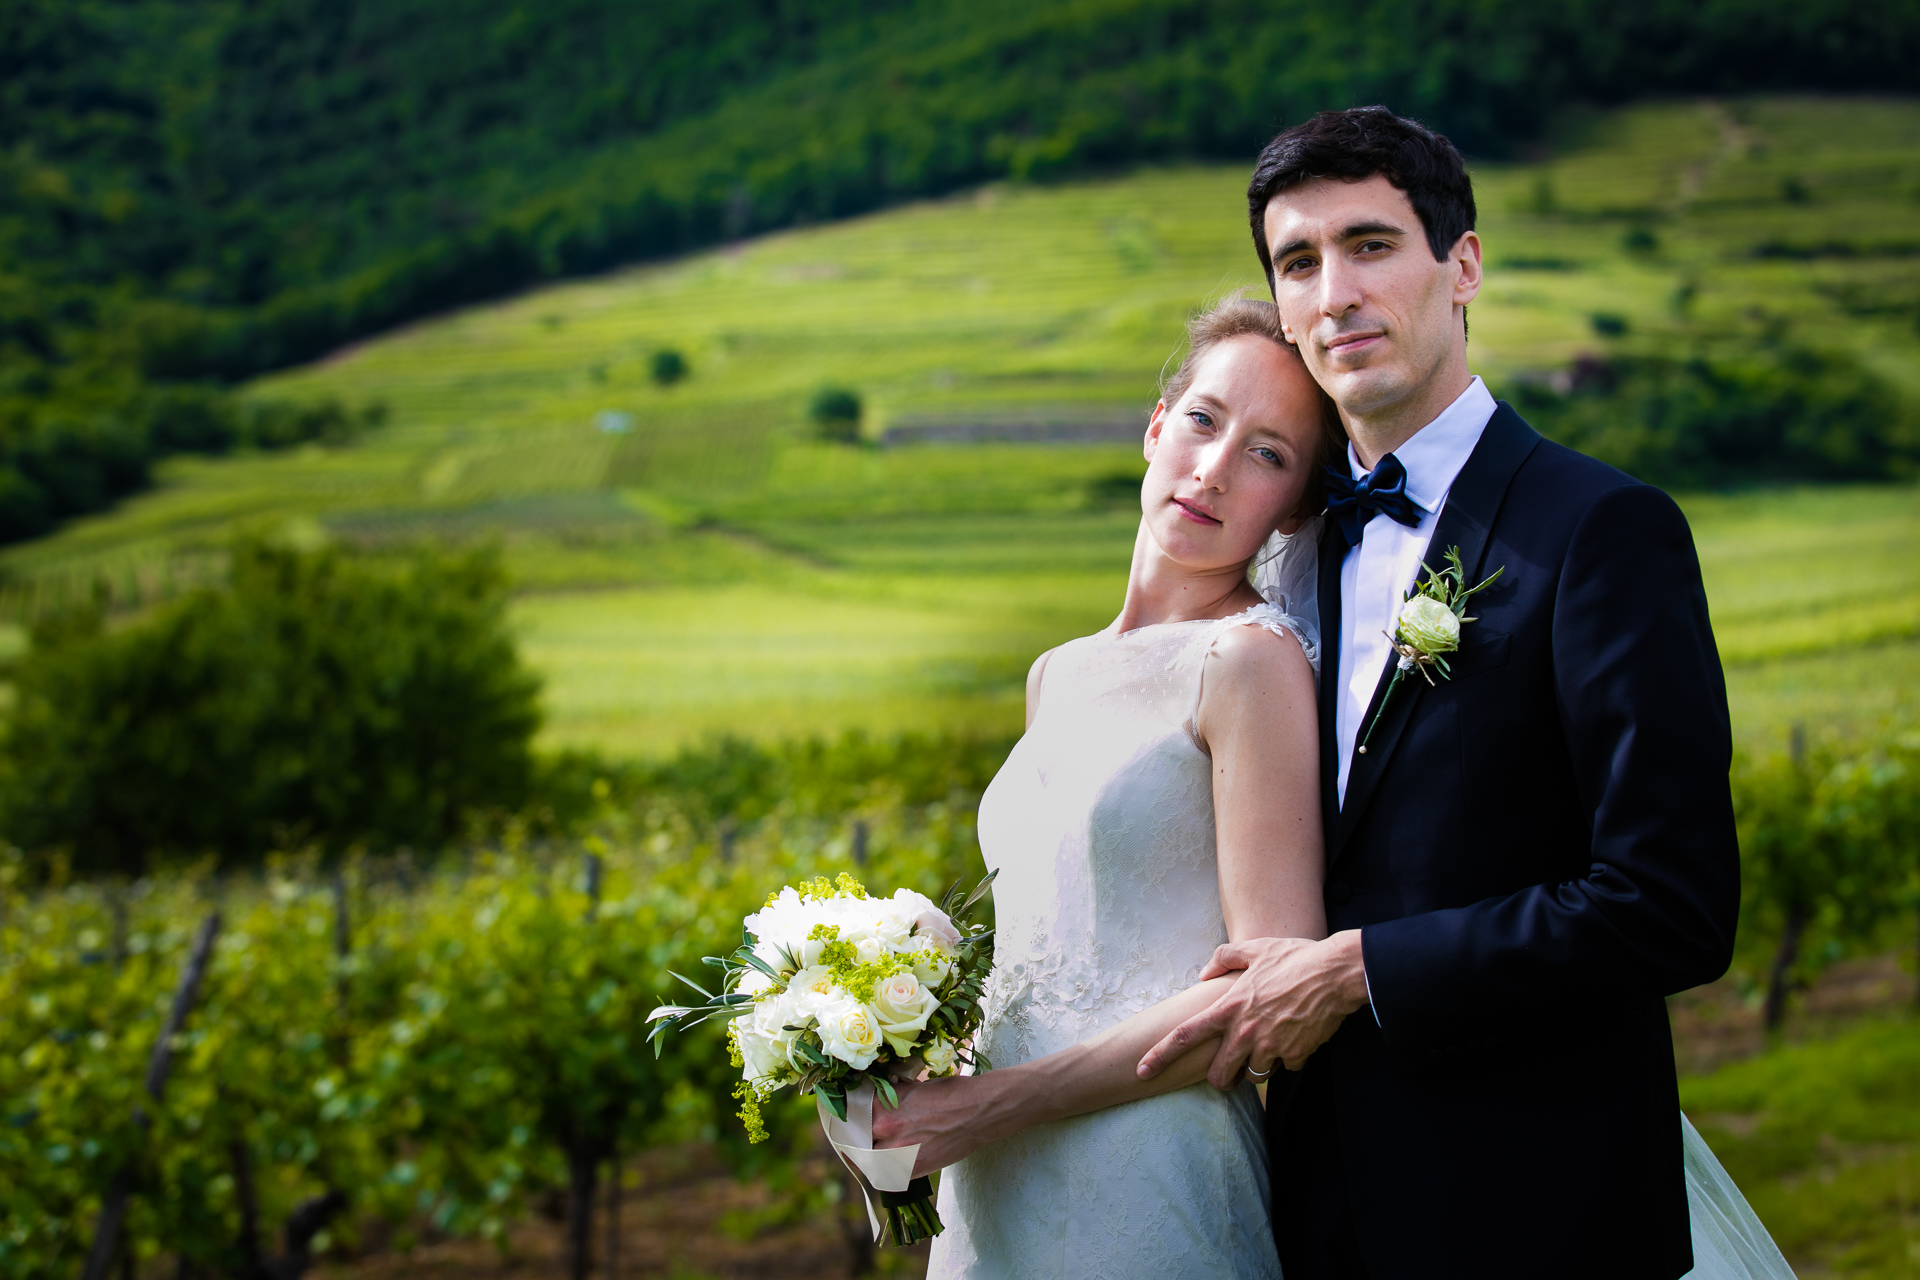 peRCeption Renaud Couderc photographe professionnel mariage photo de couple centralien - mariage haut de gamme - Strasbourg Alsace